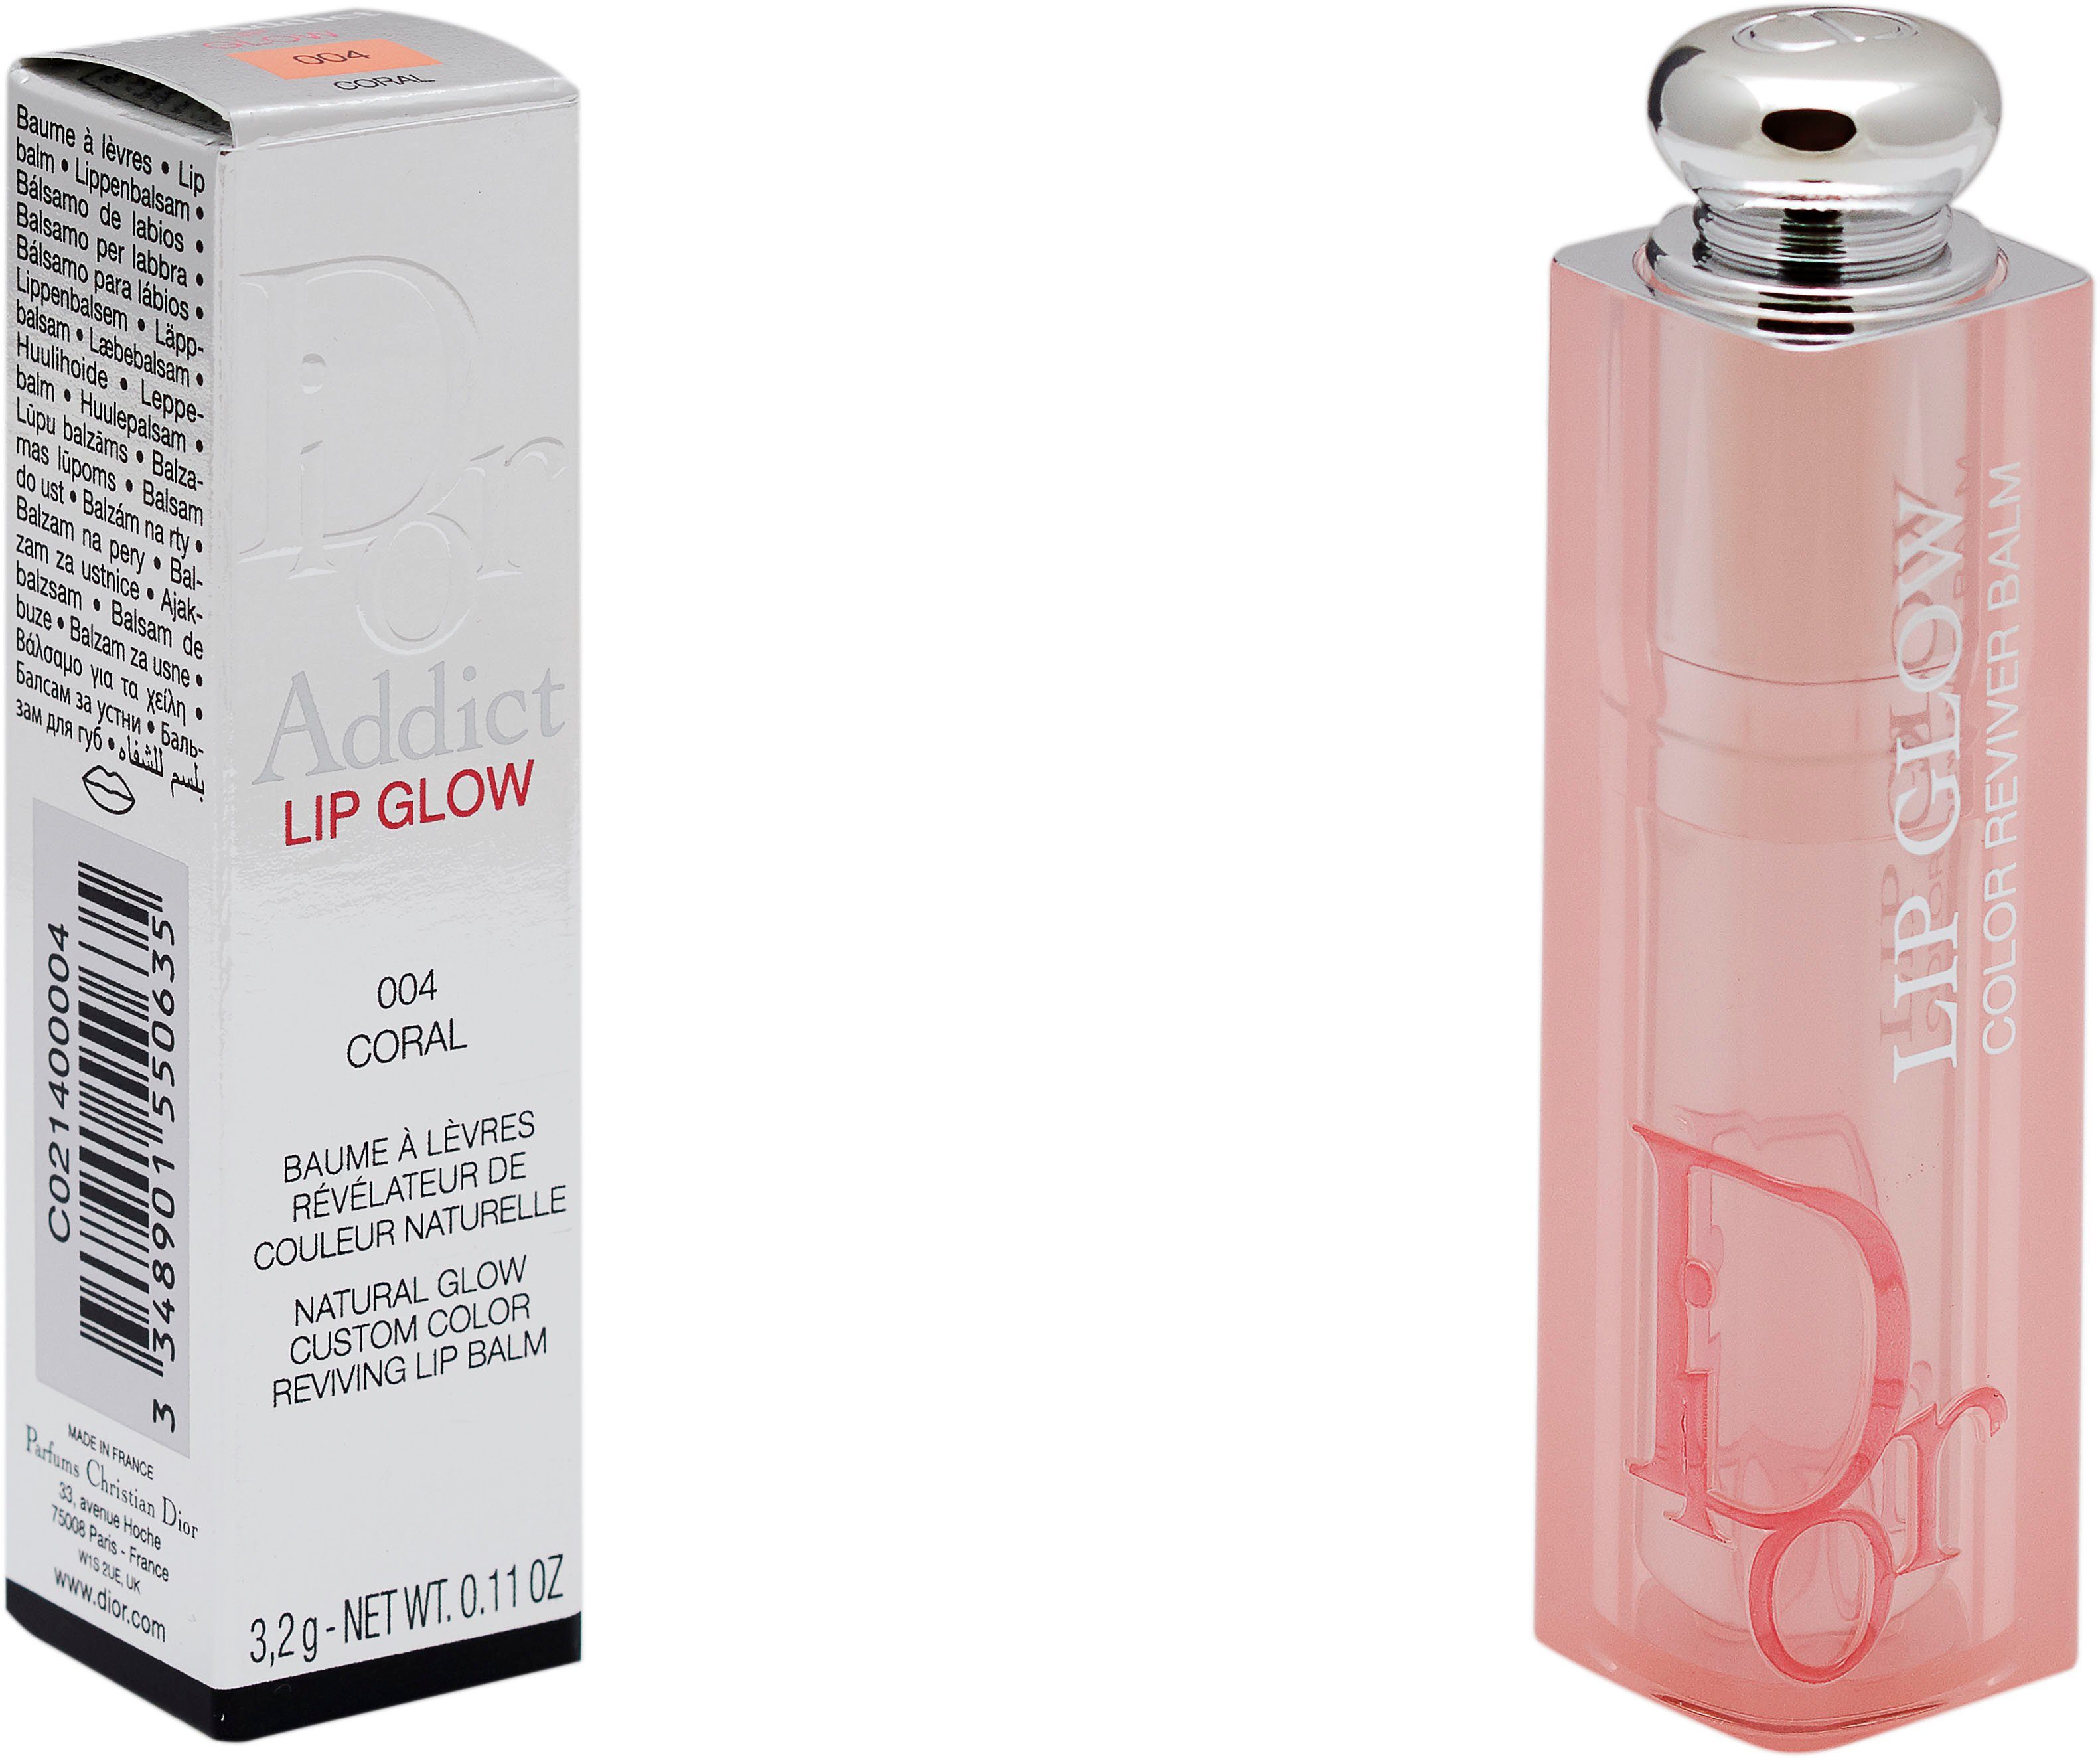 Lip Glow 004 Dior Dior Addict Lippenbalsam Coral